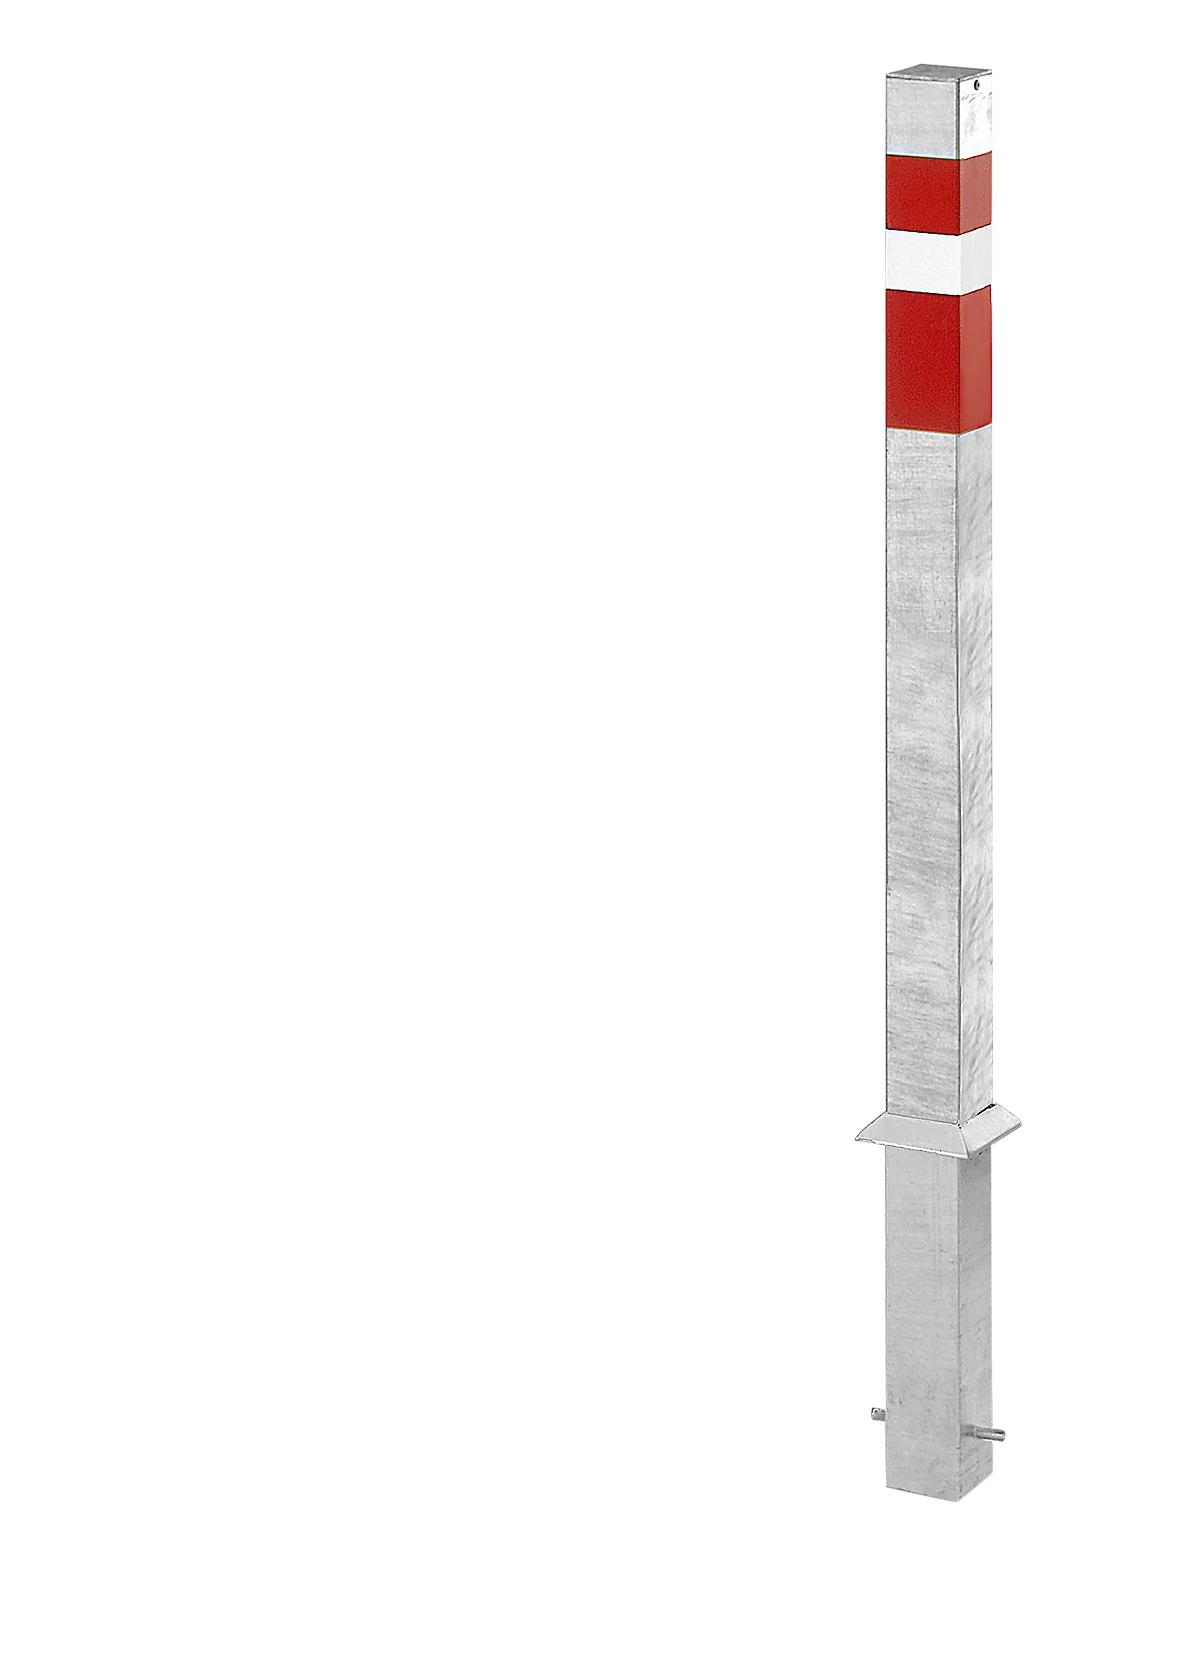 Poste cuadrado para empotrar en hormigón, con anclaje al suelo, acero, 70 x 70 mm, 900 mm sobre el suelo, rojo/blanco